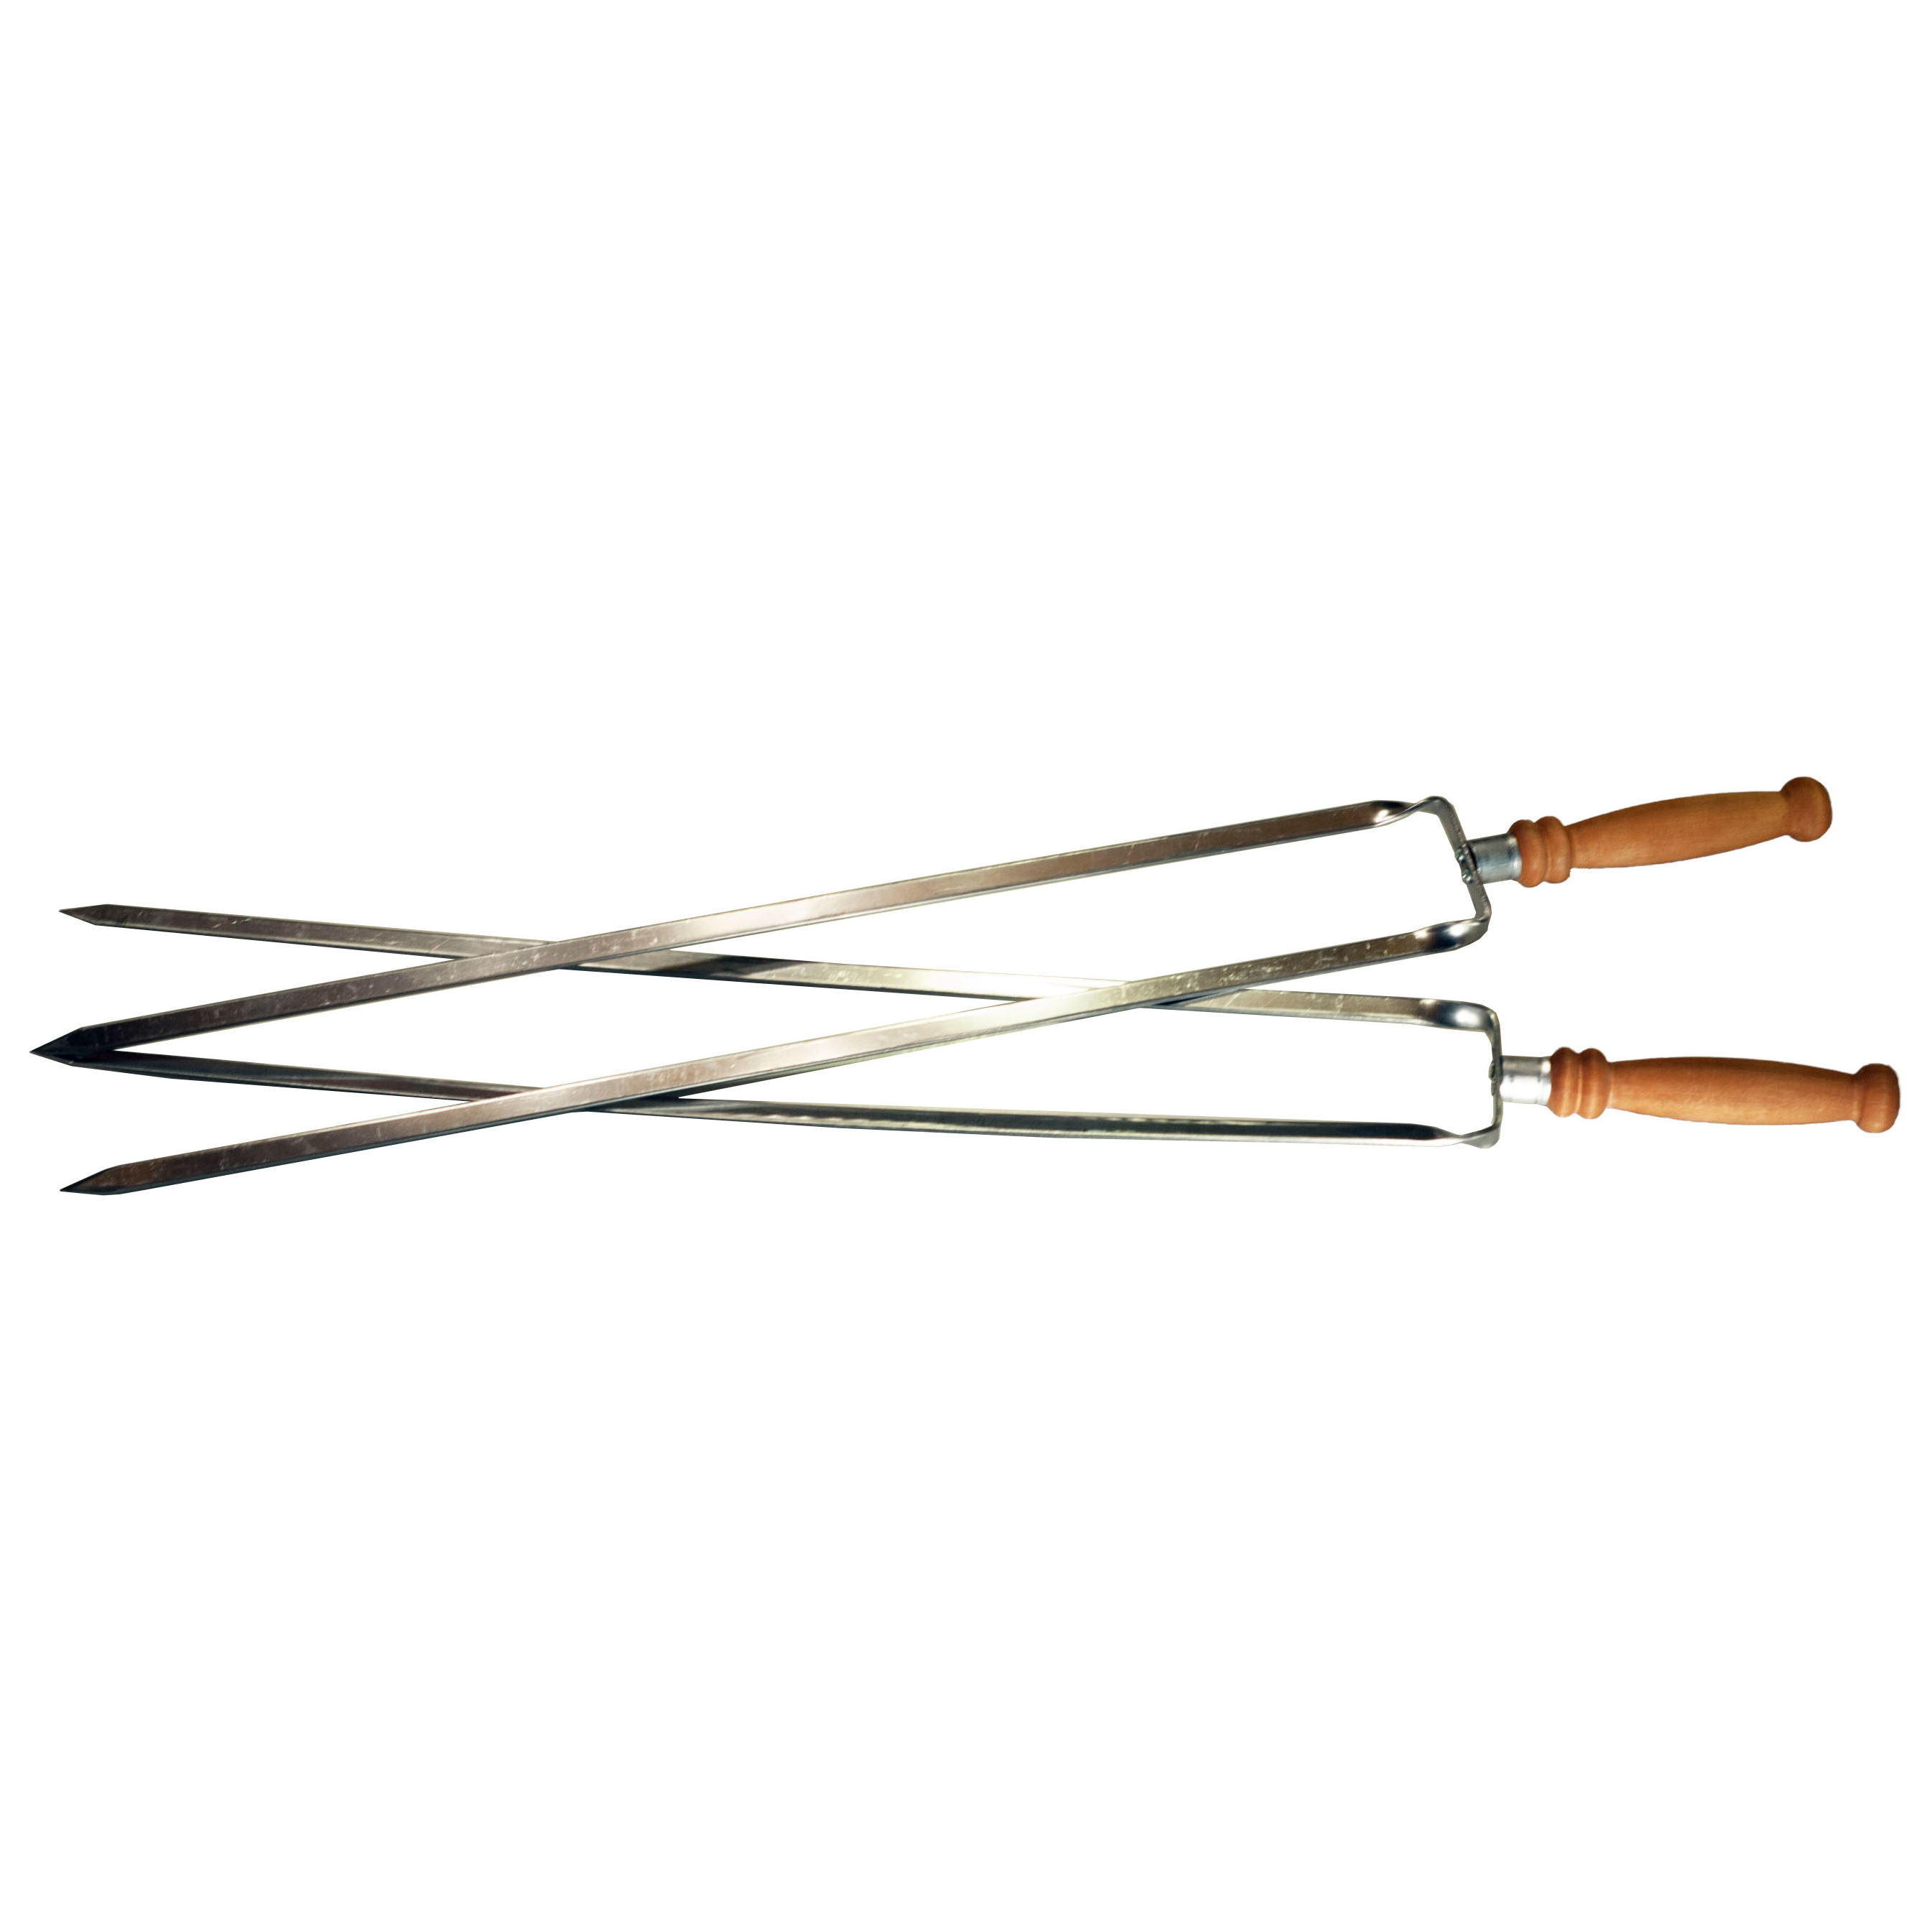 Шампур двойной с деревянной ручкой Аск-38 (14065) шампур двойной с деревянной ручкой аск 38 14065